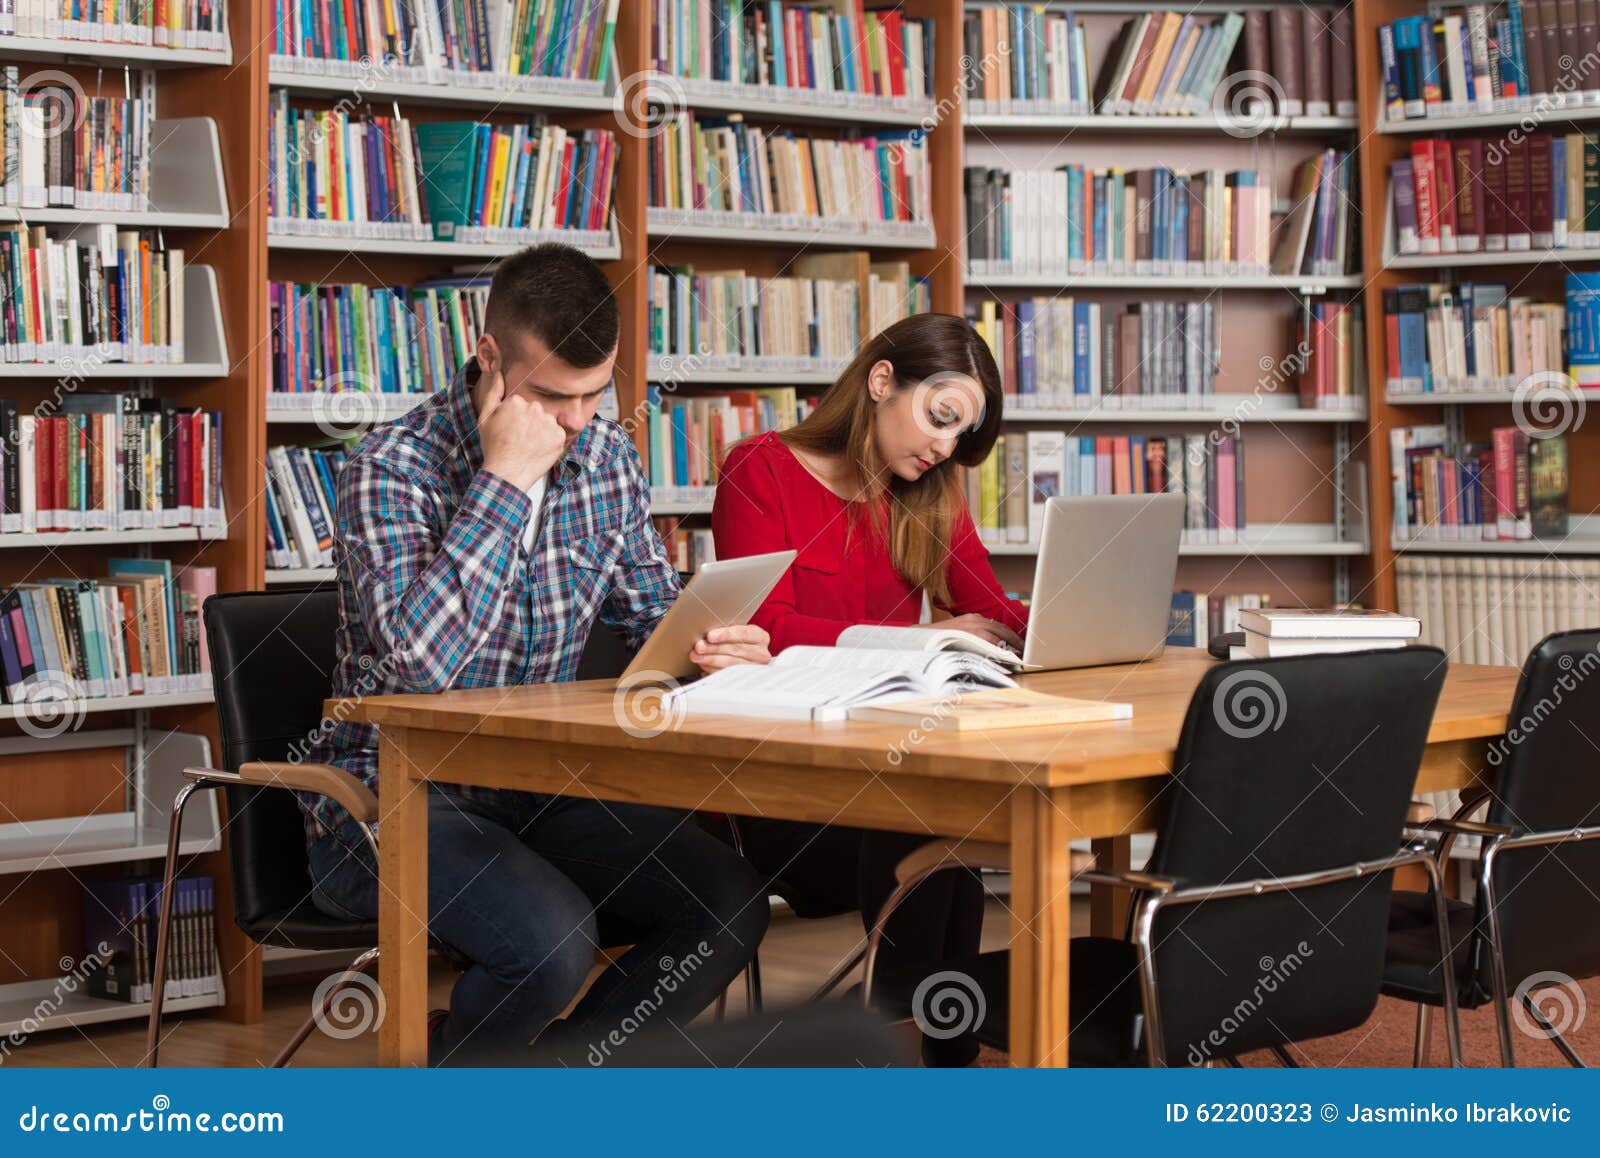 Она сидит в библиотеке. Сидит в библиотеке. Сидя в библиотеке. Студентка в библиотеке сидит. Читает в библиотеке за столом.